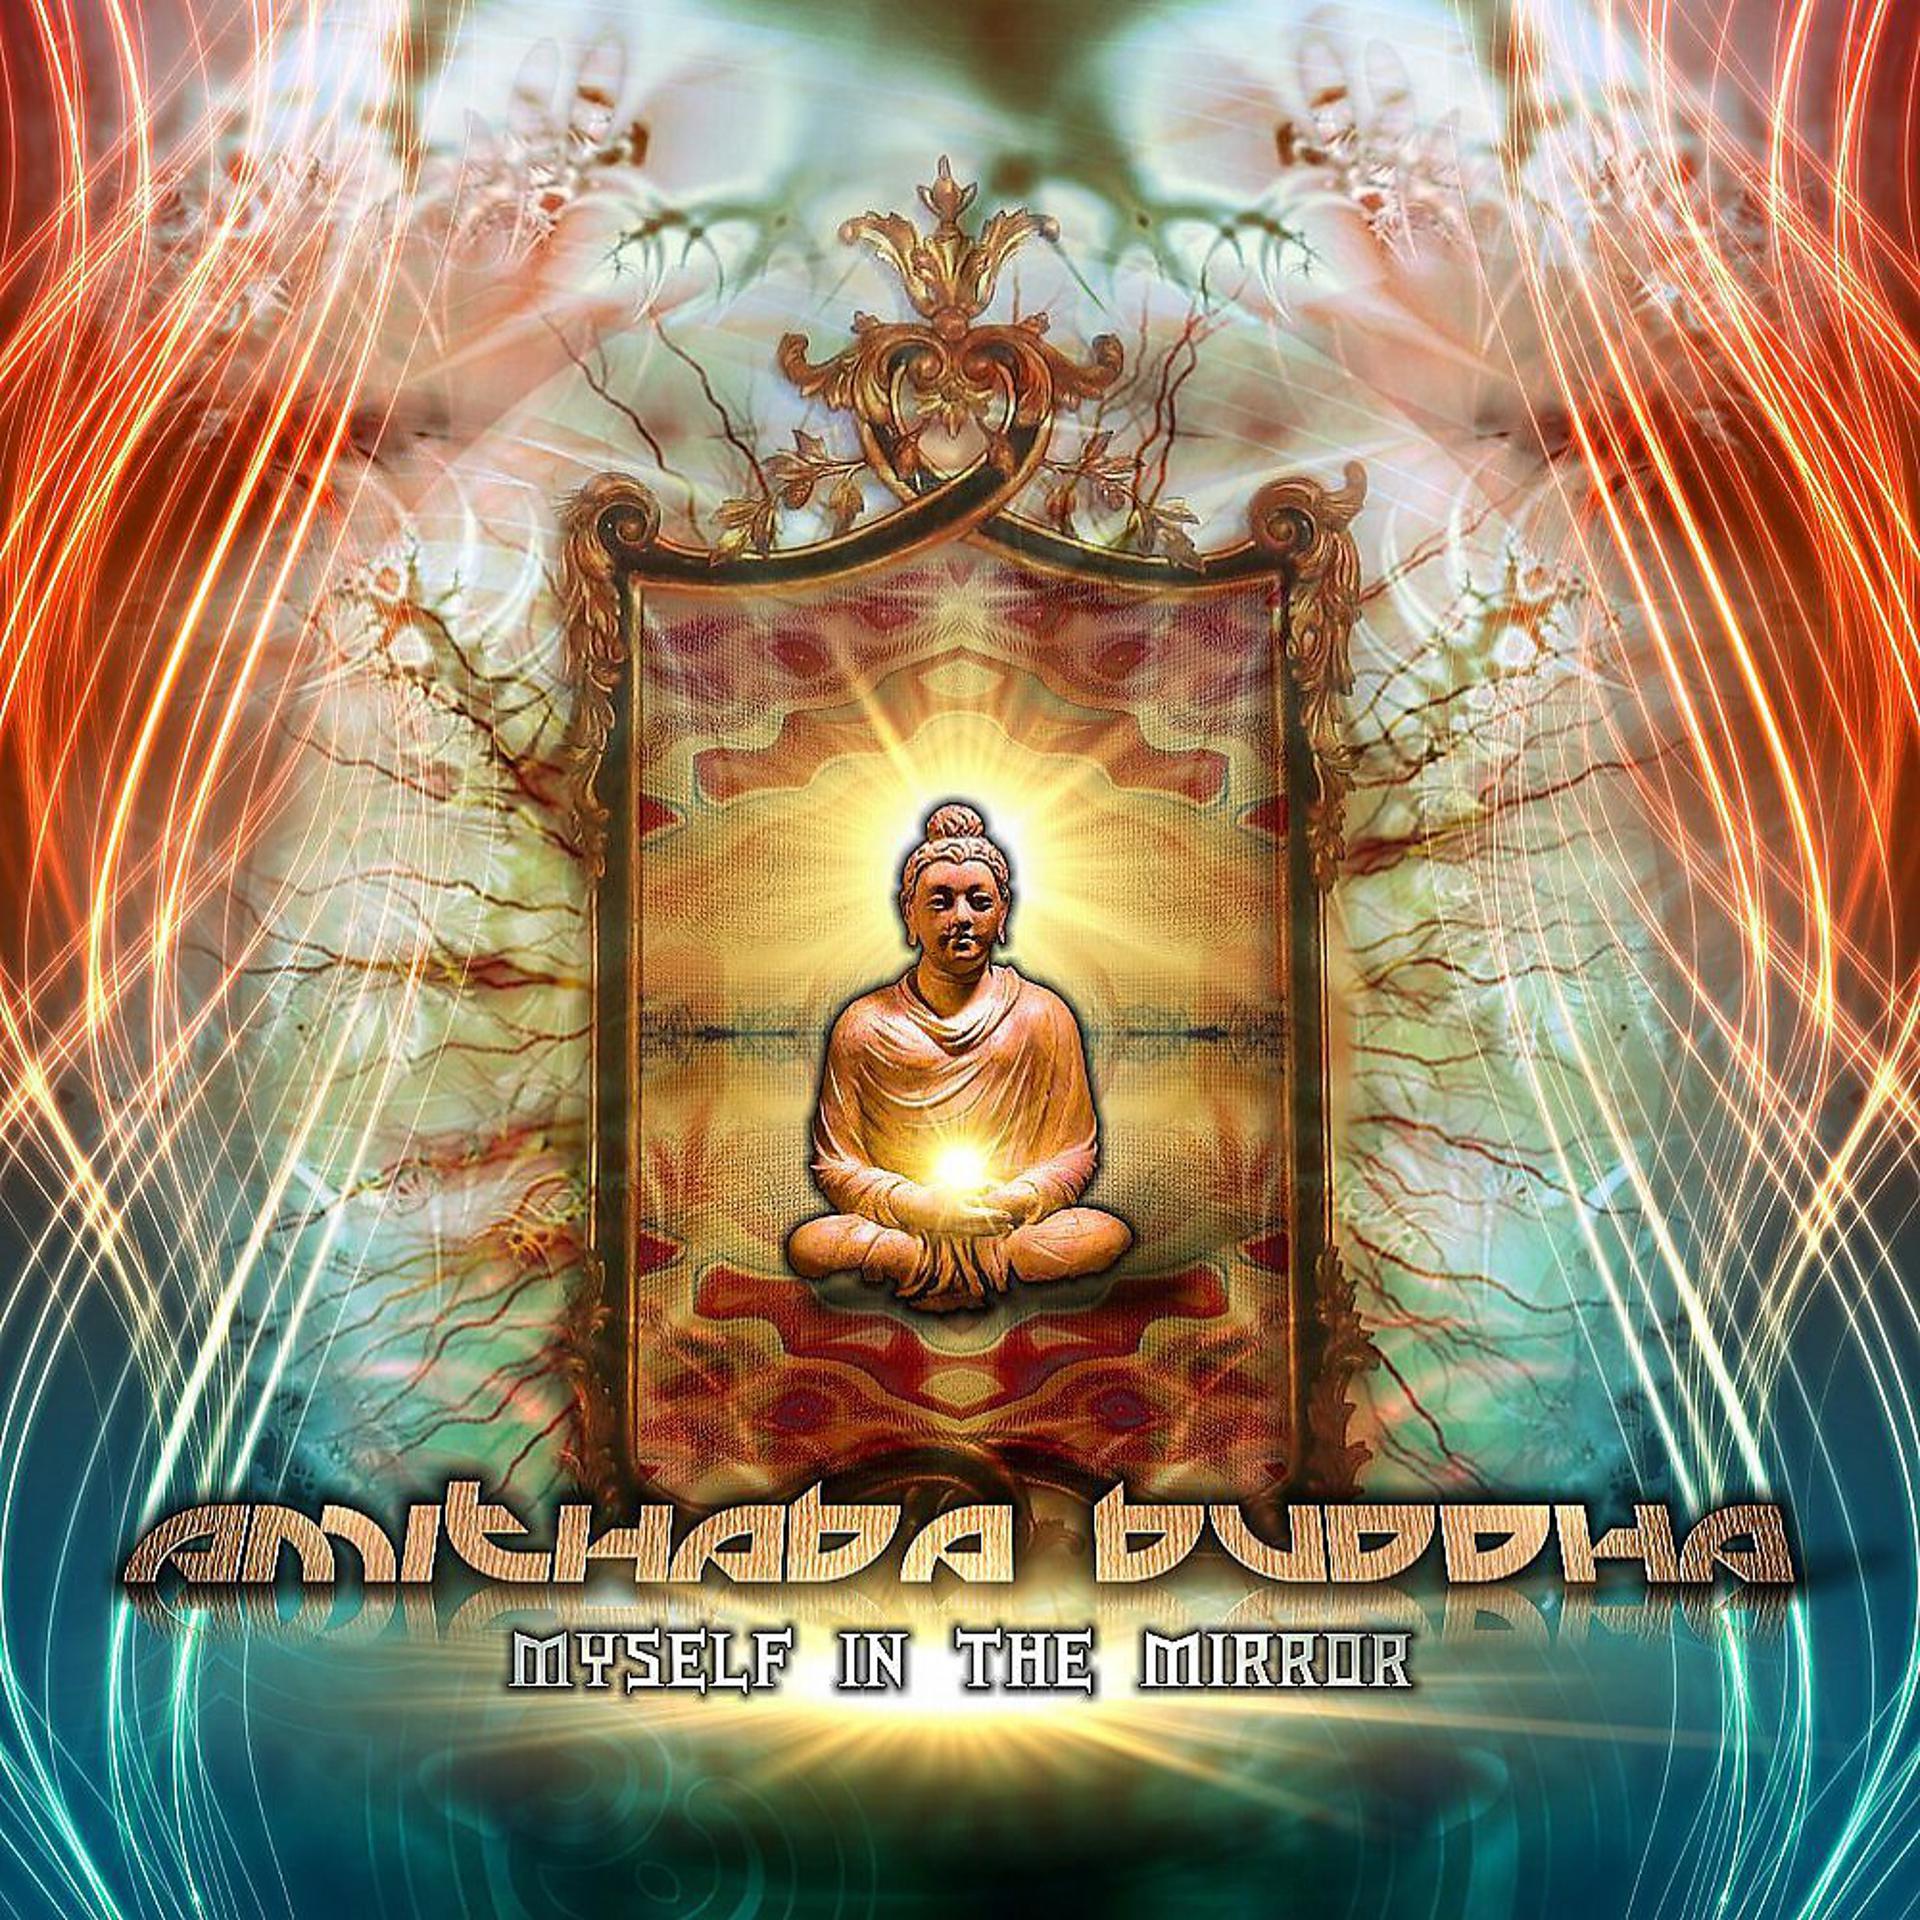 Будда слушает аудиокнига. Amithaba Buddha. Будда Psy. Будда солнце. Илен Мейер Будда.